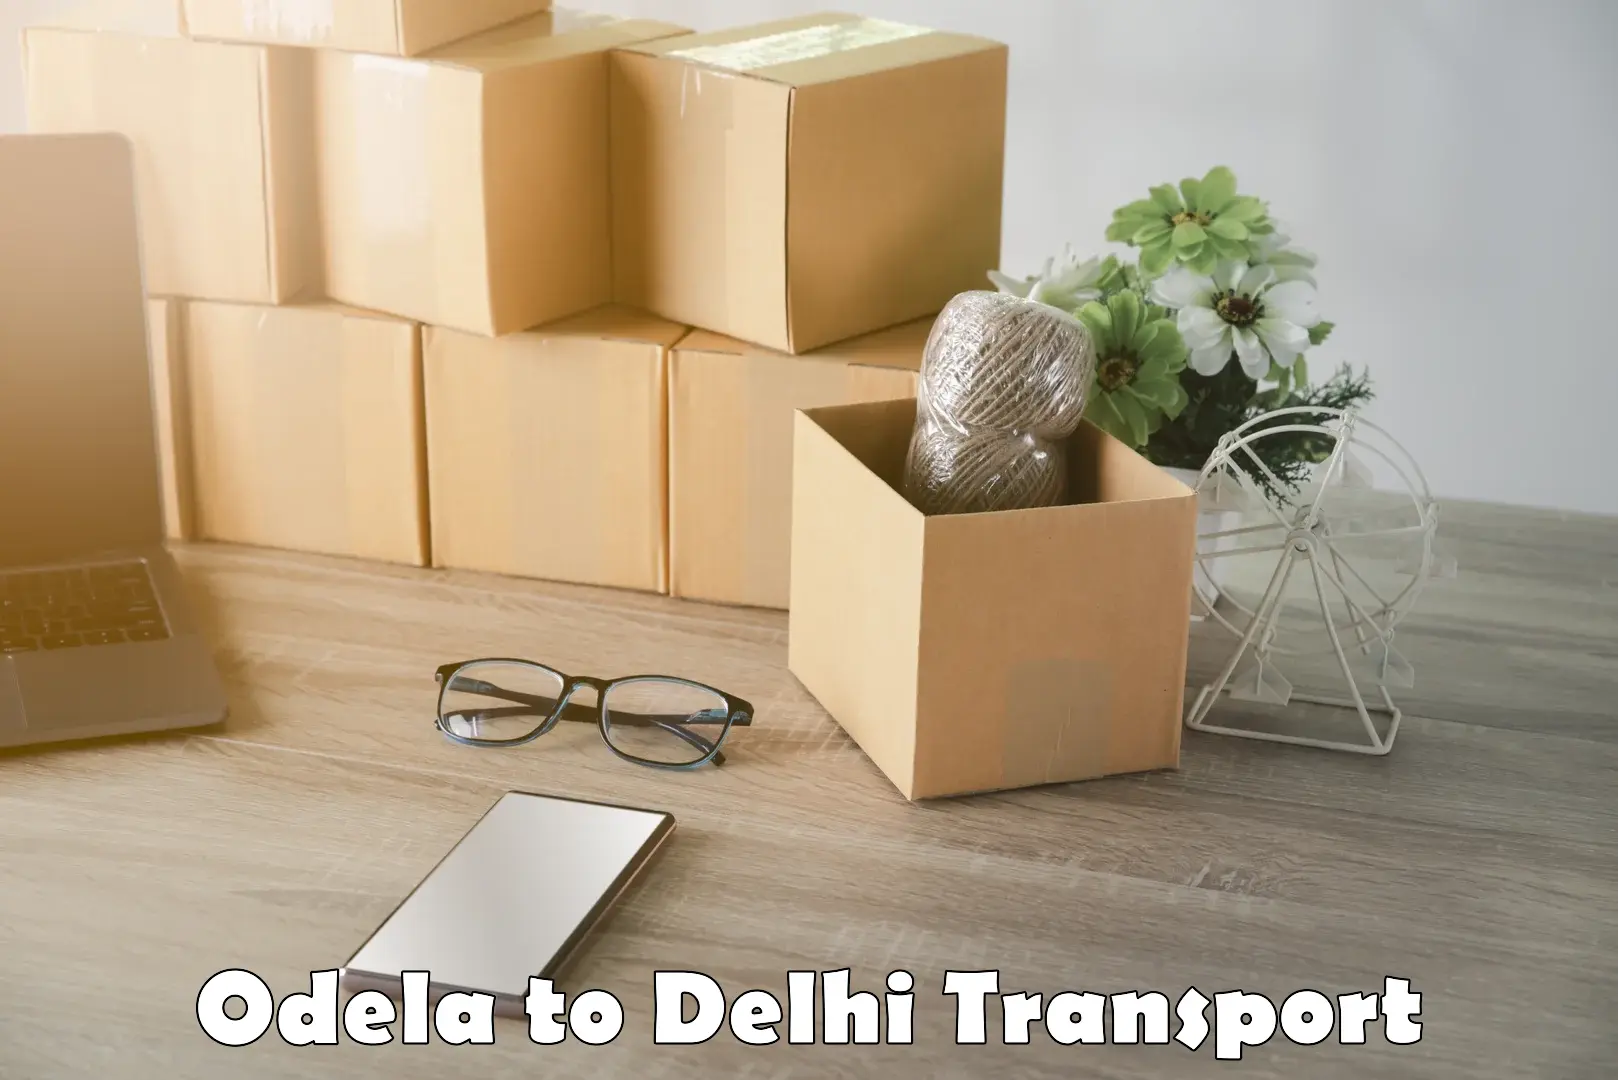 Commercial transport service Odela to Delhi